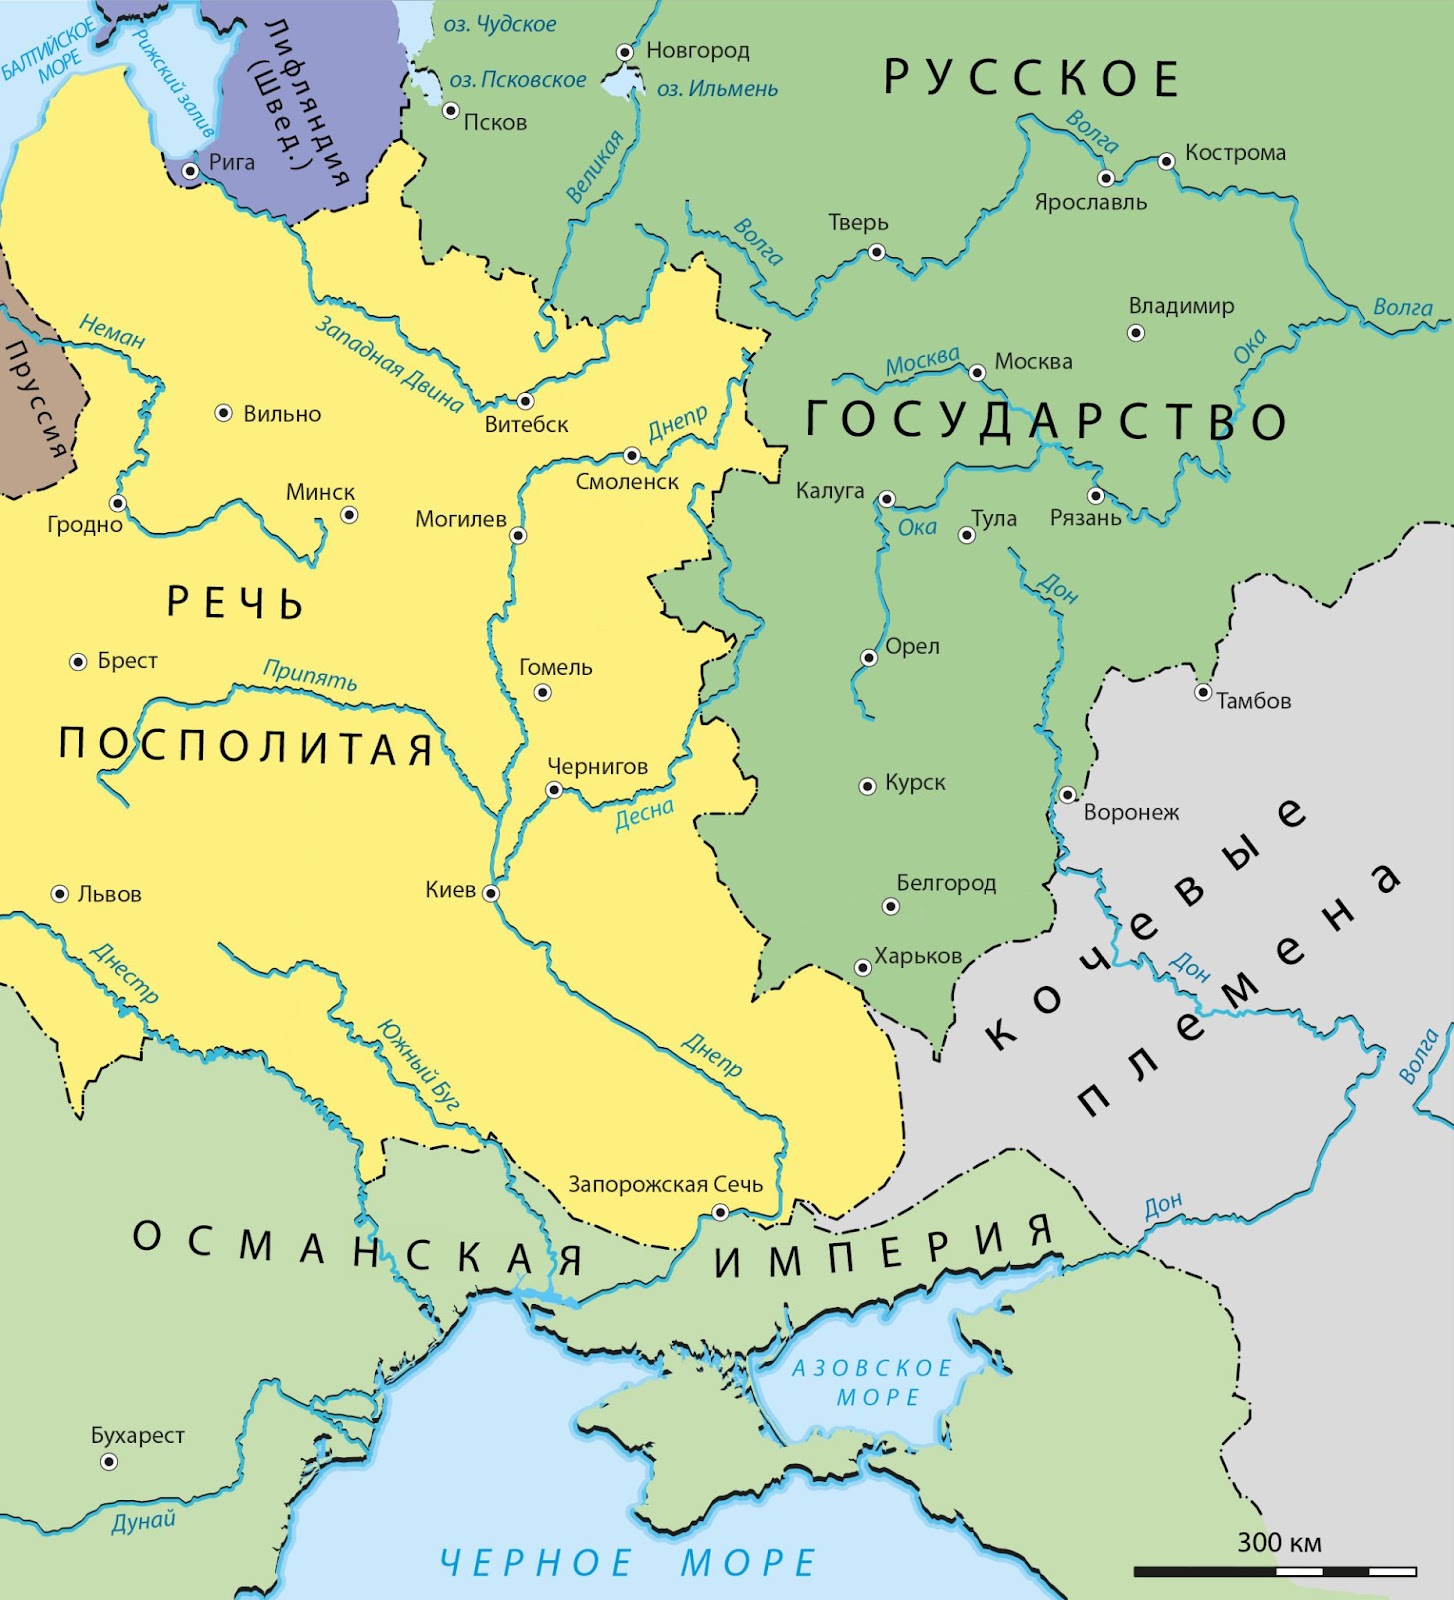 «Неизвестная война» 1654-1667. Был ли геноцид белорусов? 2